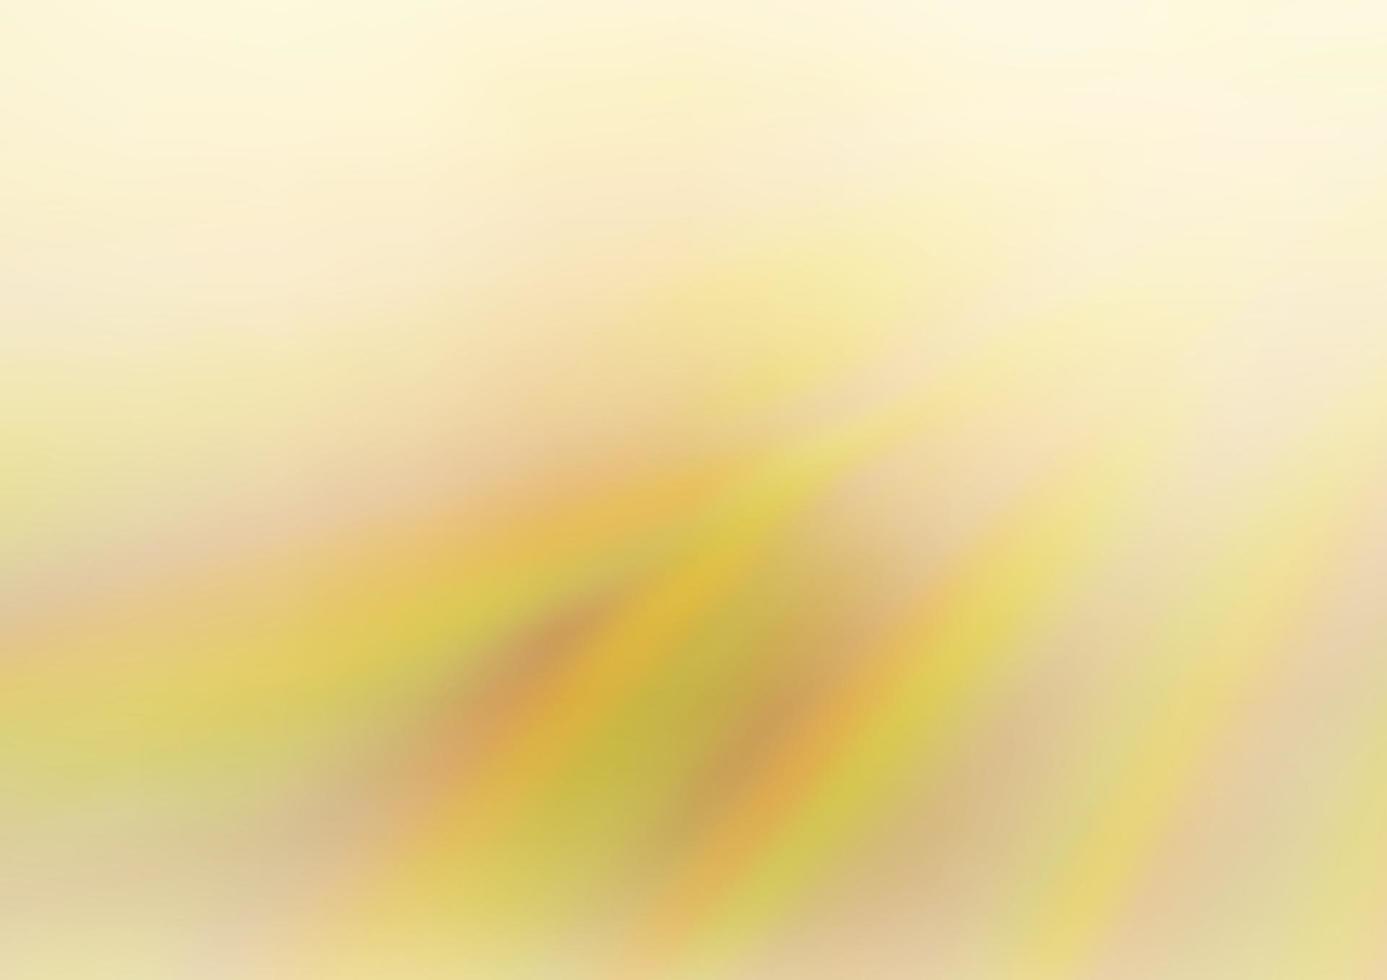 sfondo astratto vettoriale giallo chiaro, arancione.